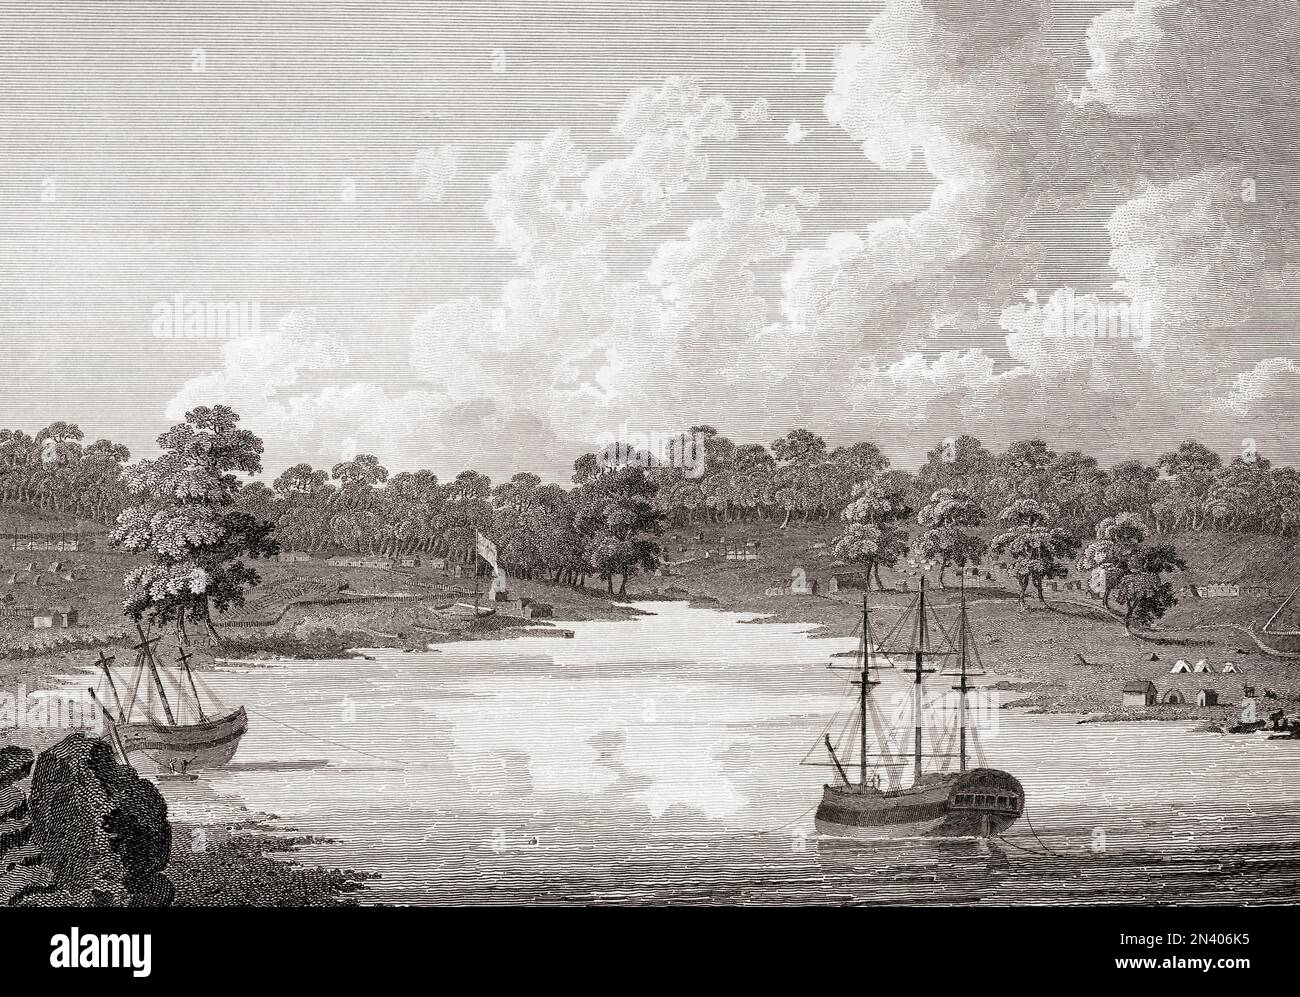 Blick auf die Siedlung in Sydney Cove, Port Jackson, 20. August 1788. Gezeichnet von Edward Dayes aus einer Skizze von J. Hunter. Stockfoto